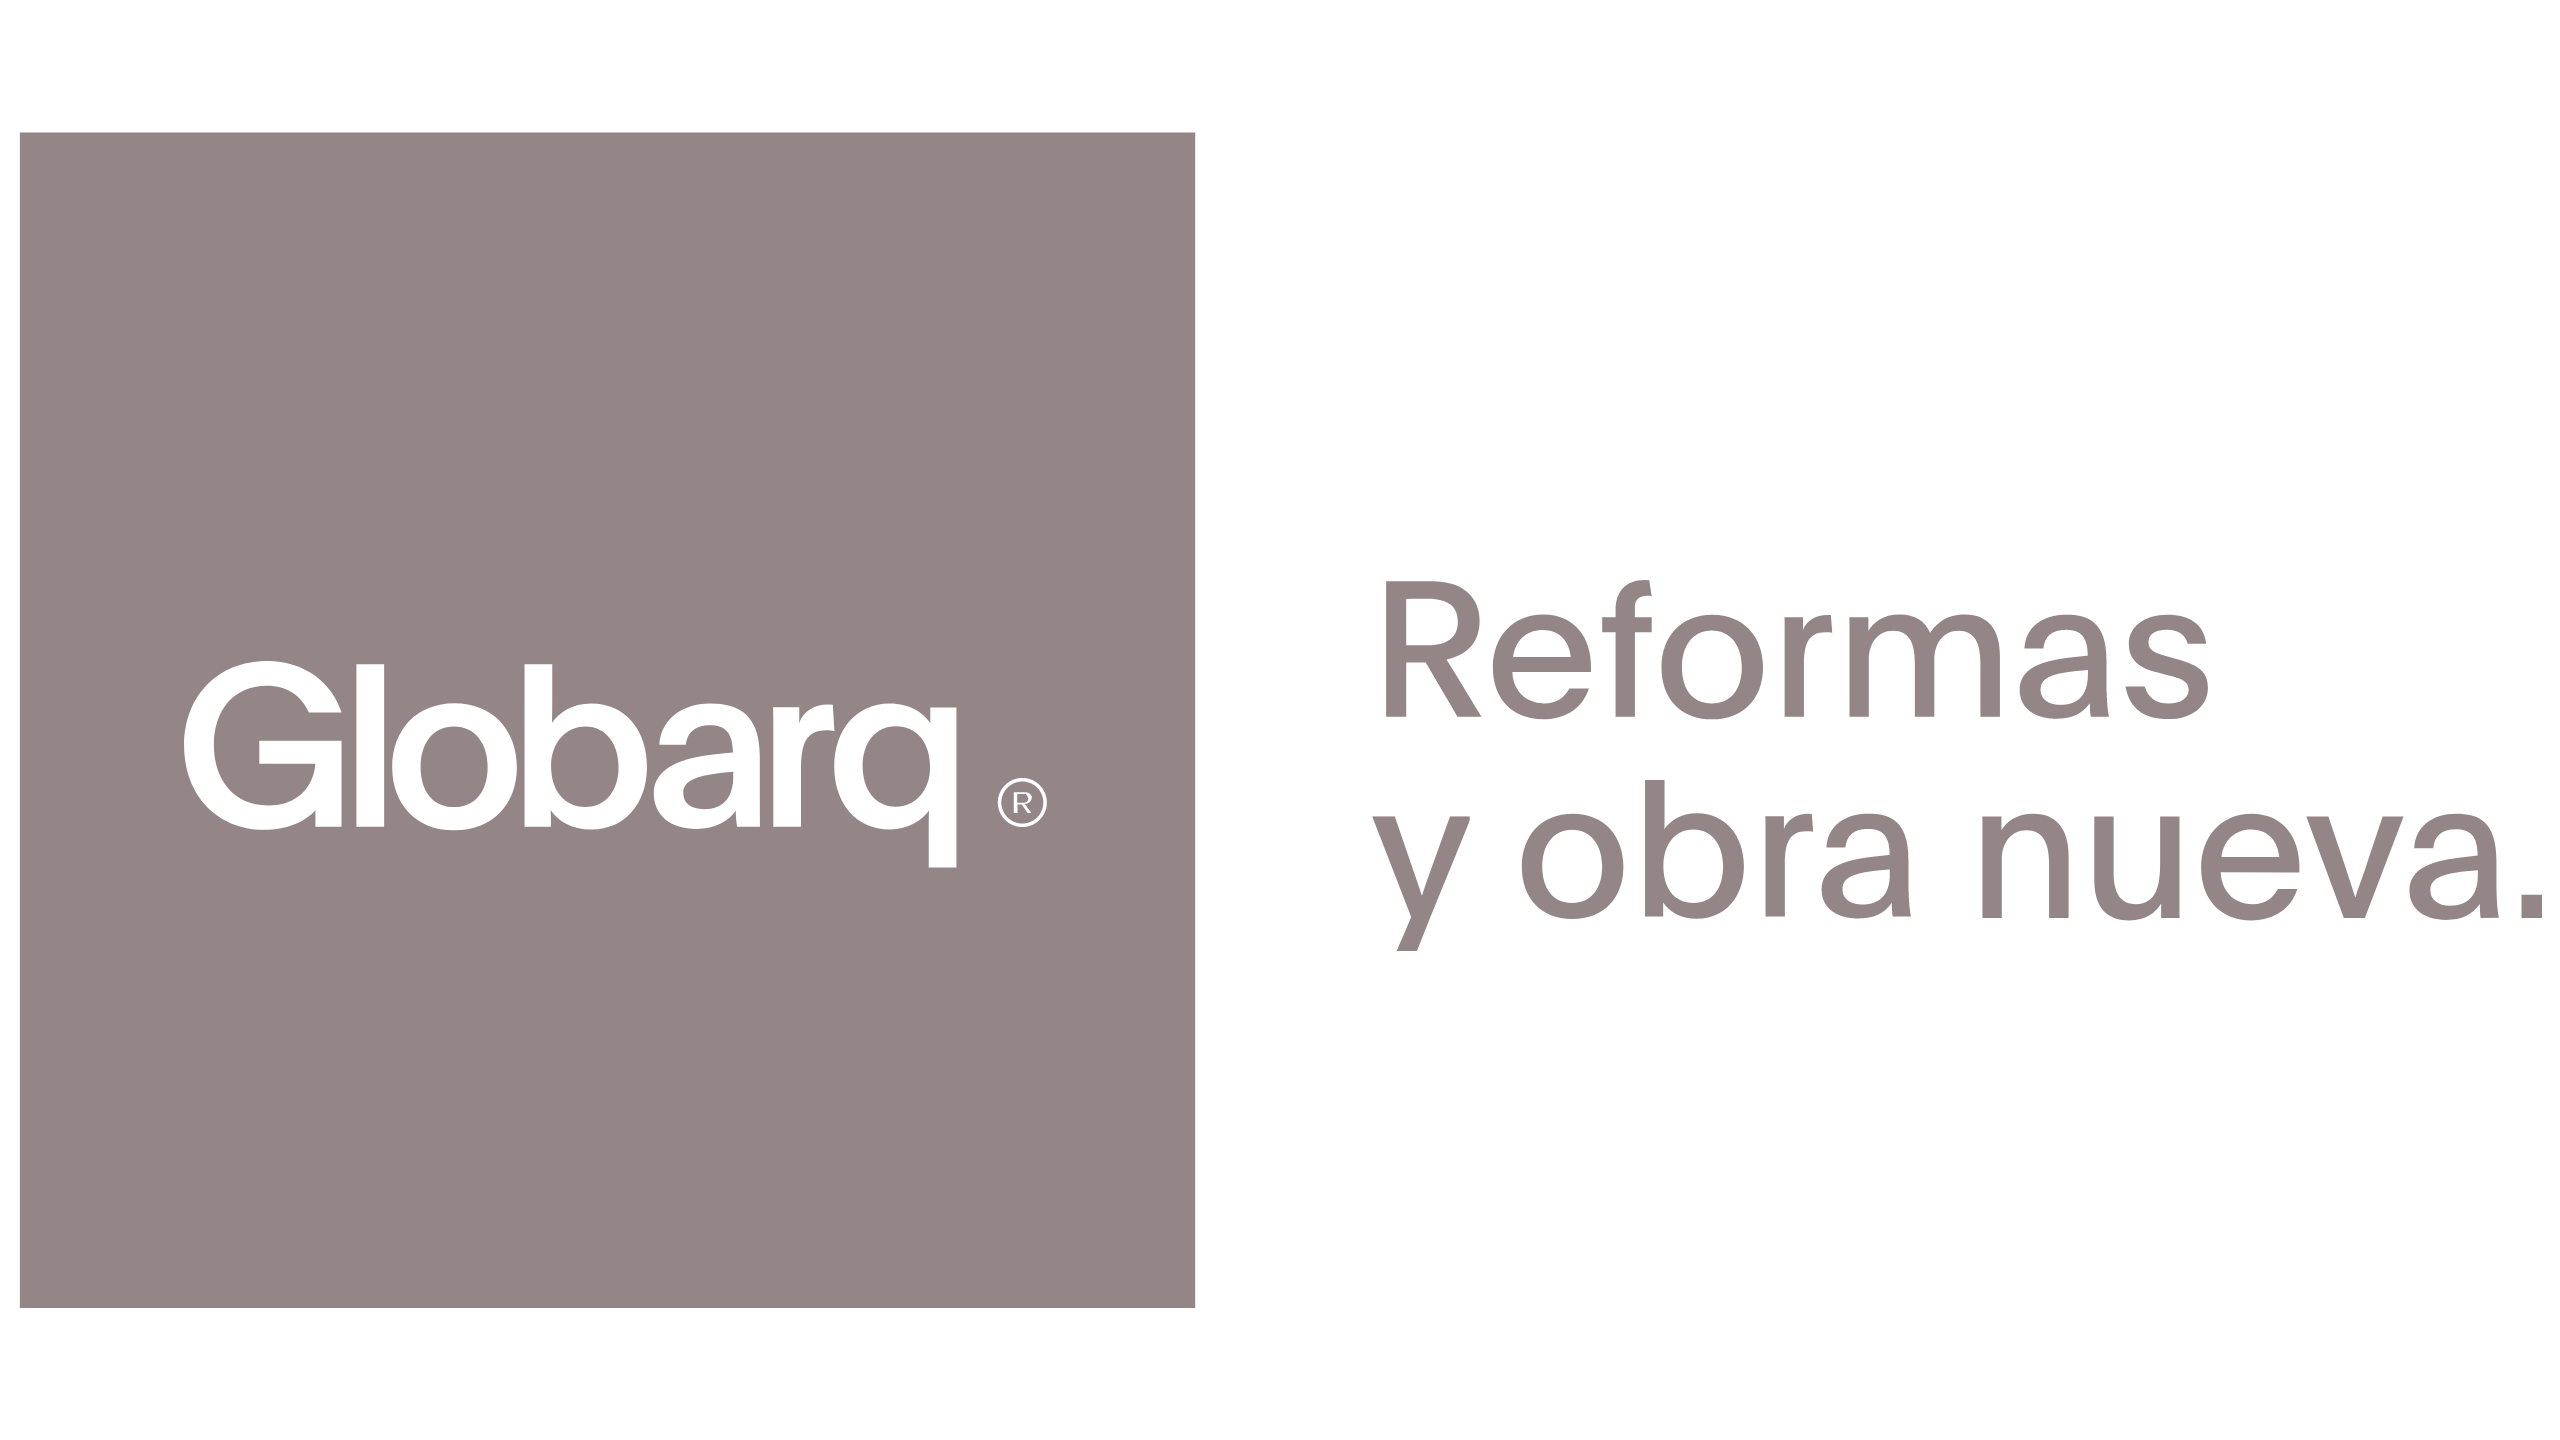 globarq reformas y obra nueva